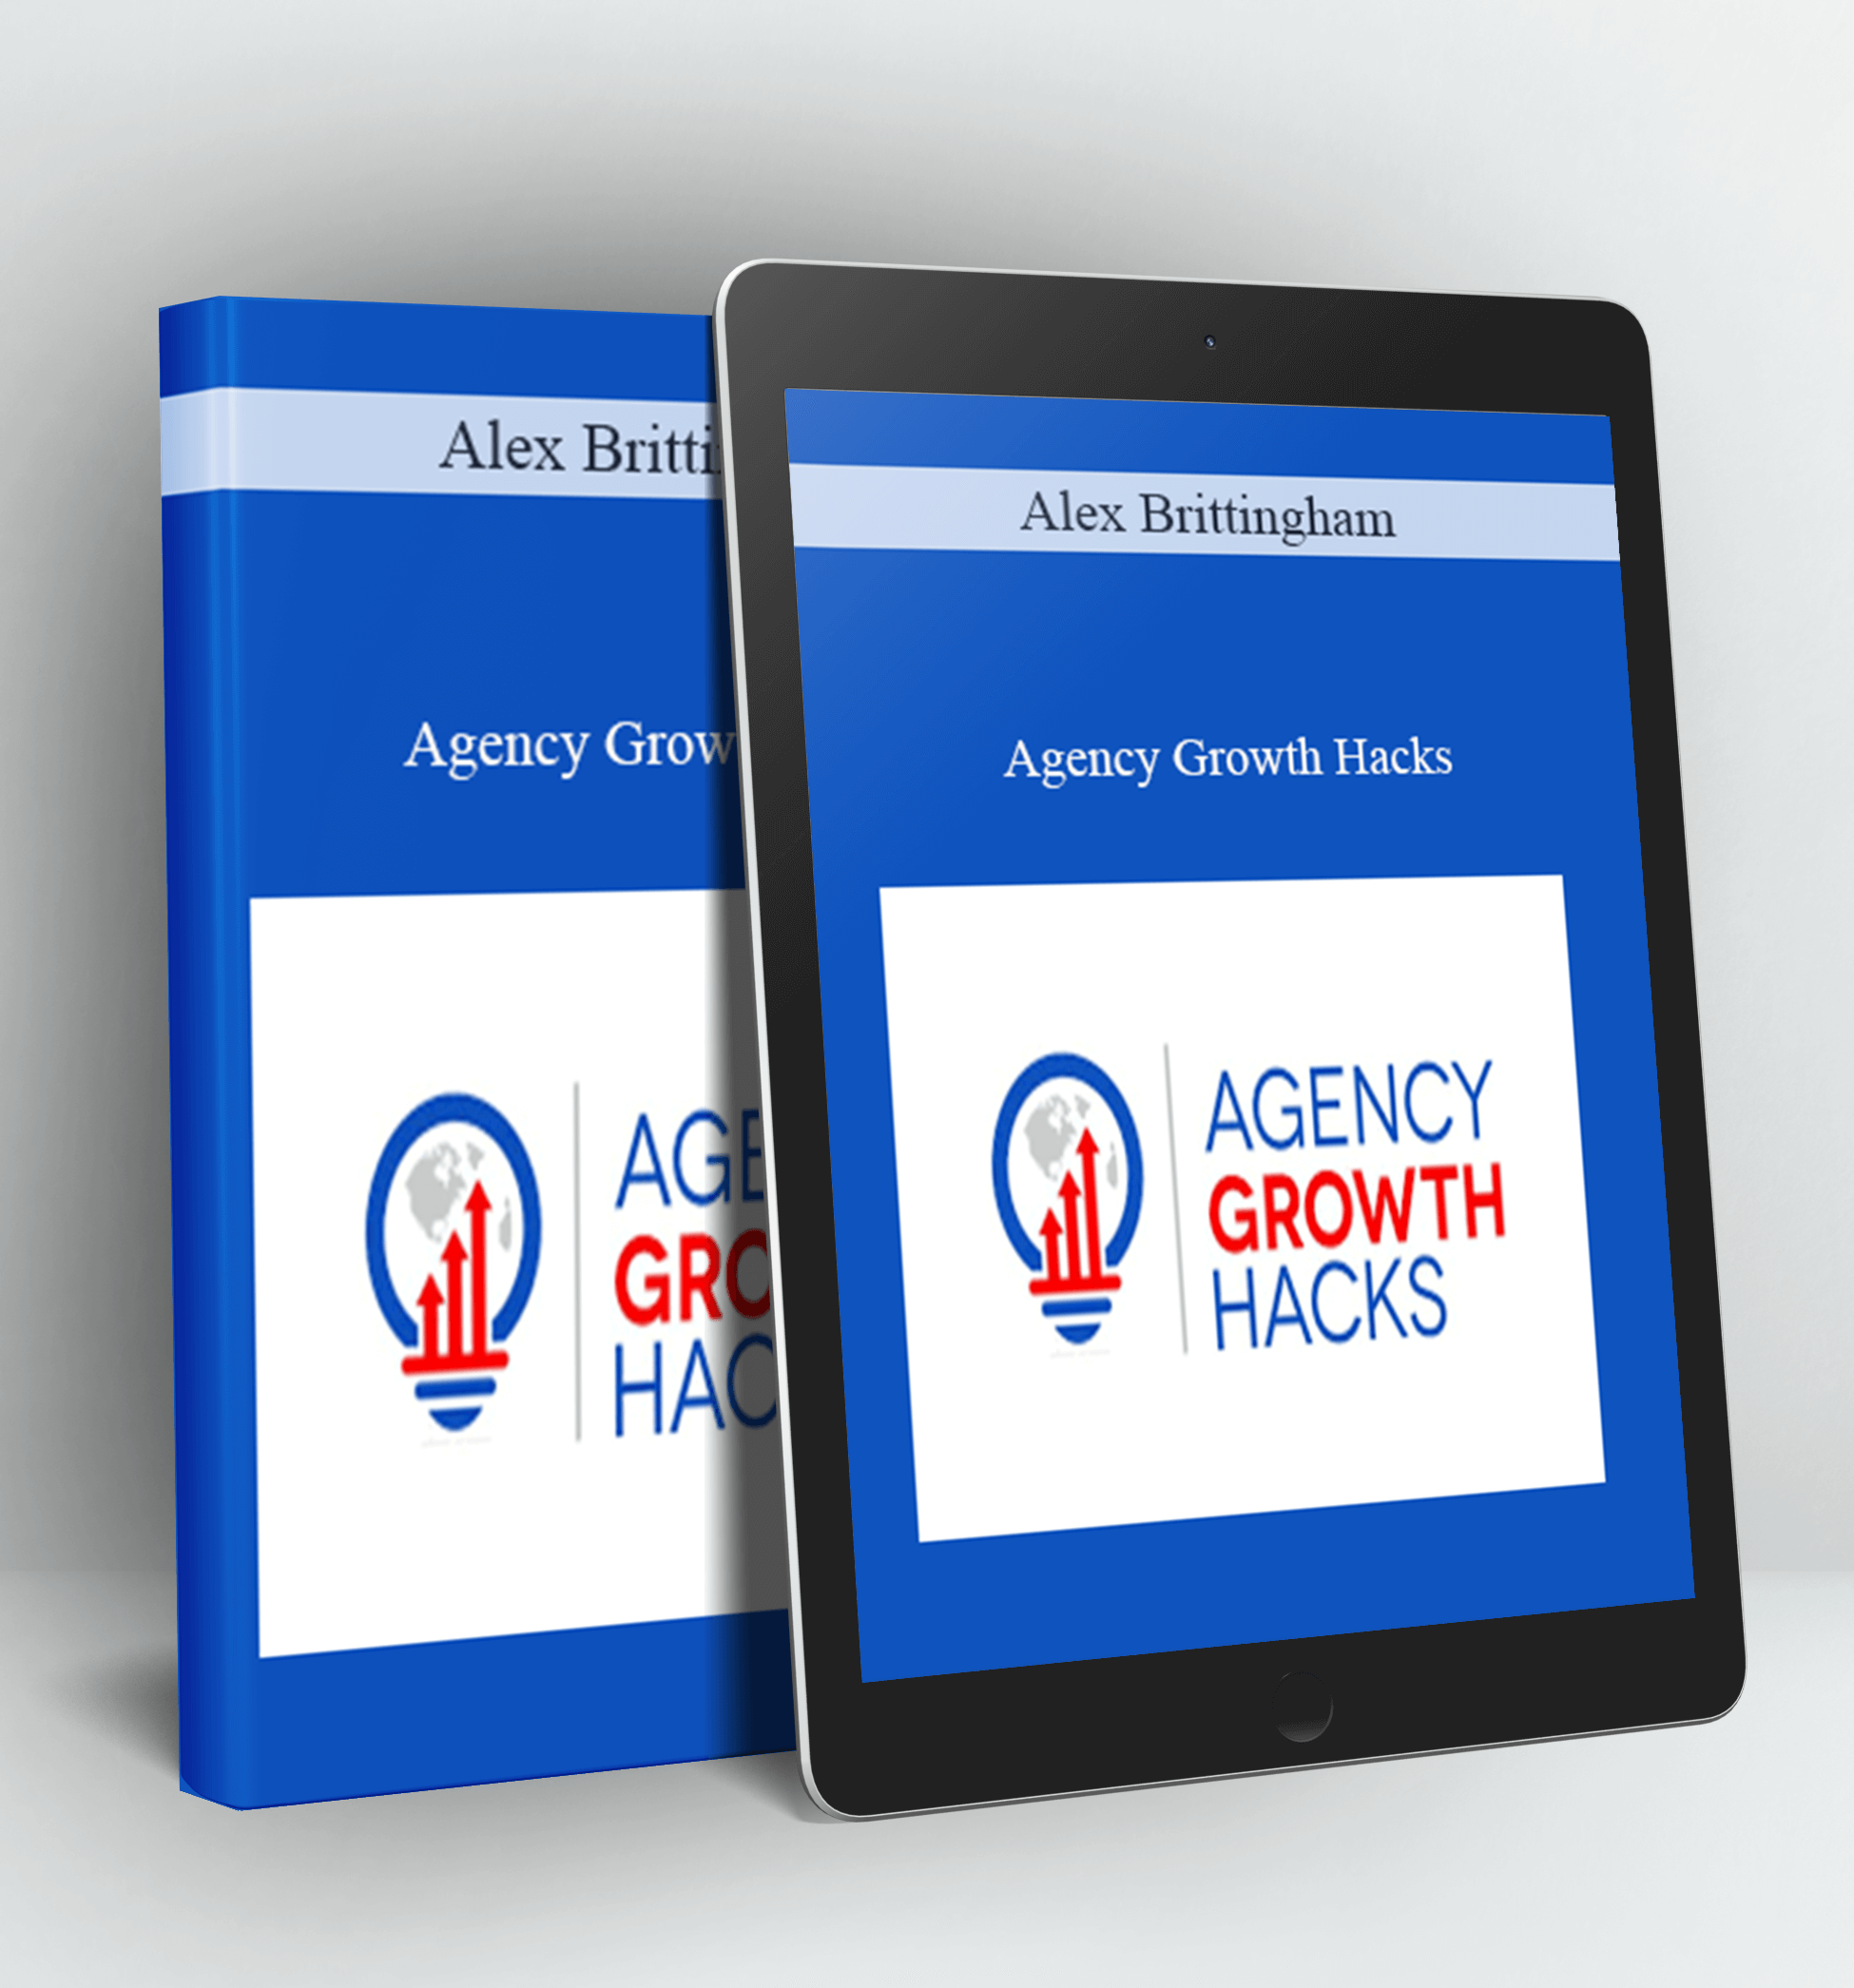 Agency Growth Hacks - Alex Brittingham